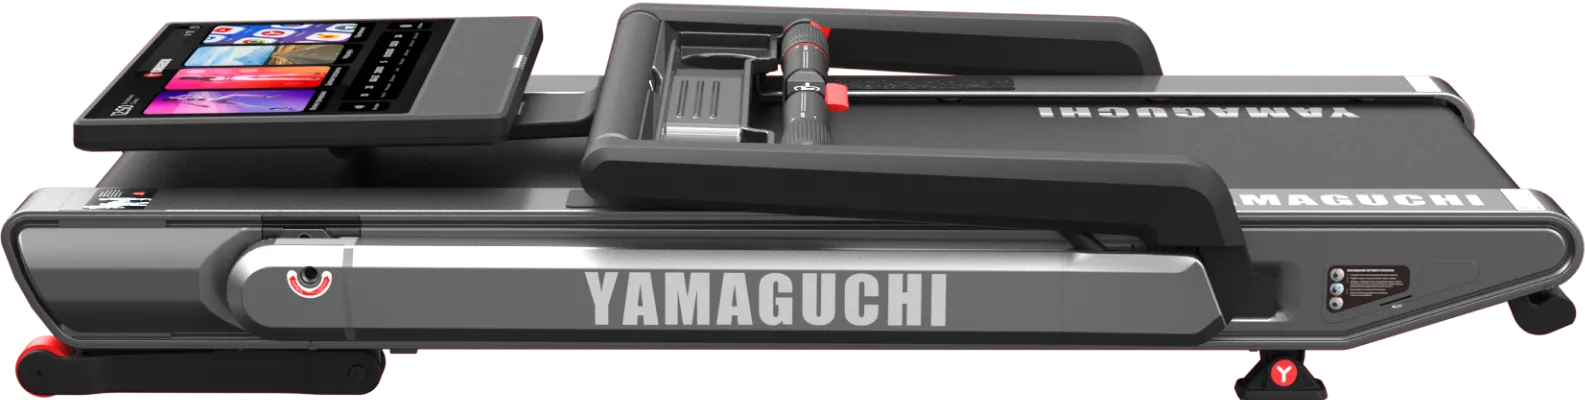 yamaguchi-max-pro